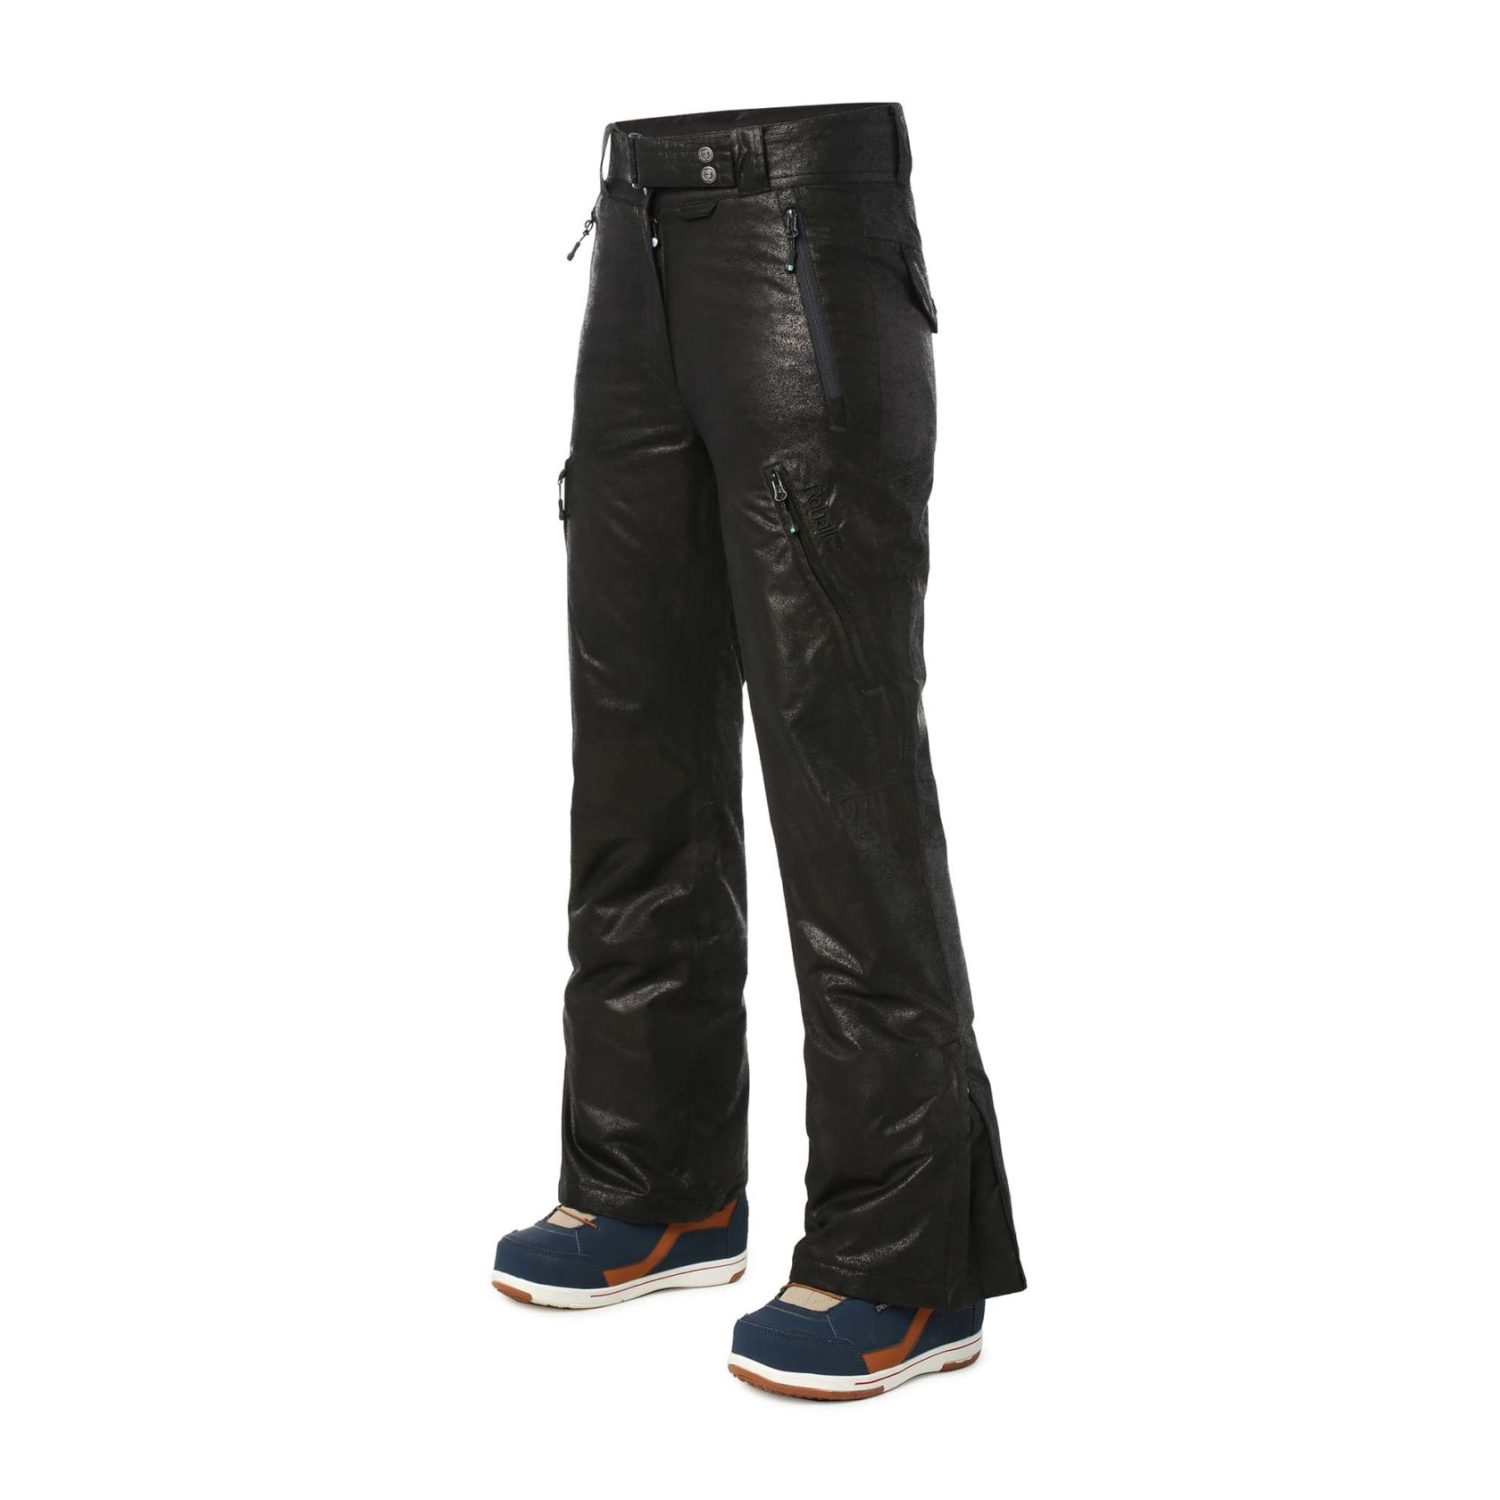 Штаны для сноуборда Rehall 16-17 Missy R Snowpant Black Leather